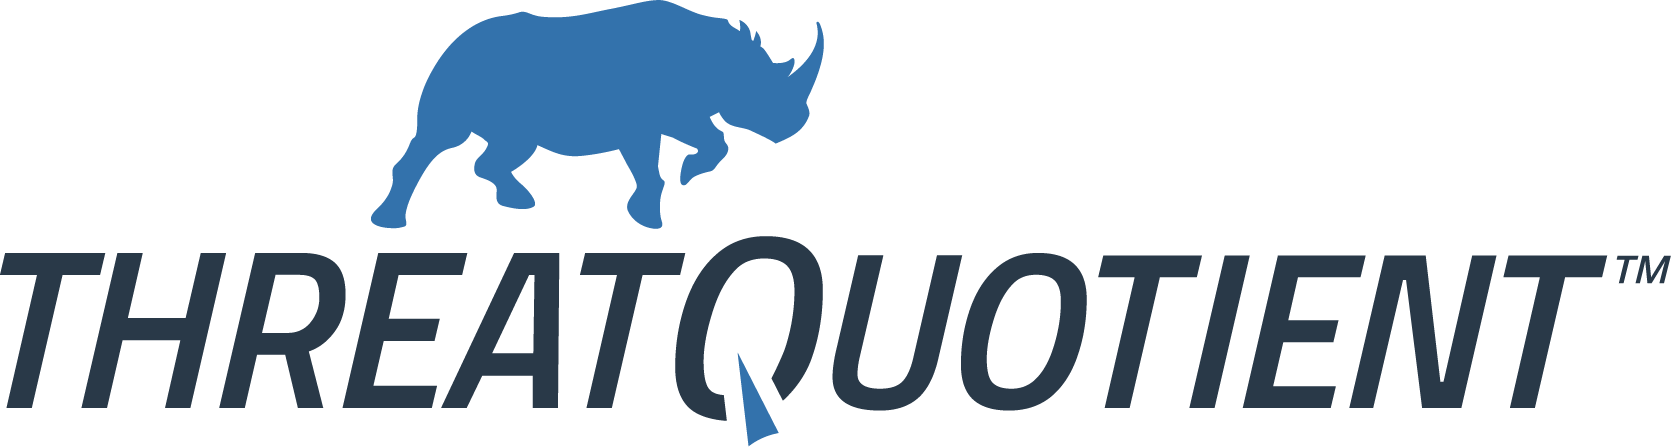 Threat Quotient tm logo